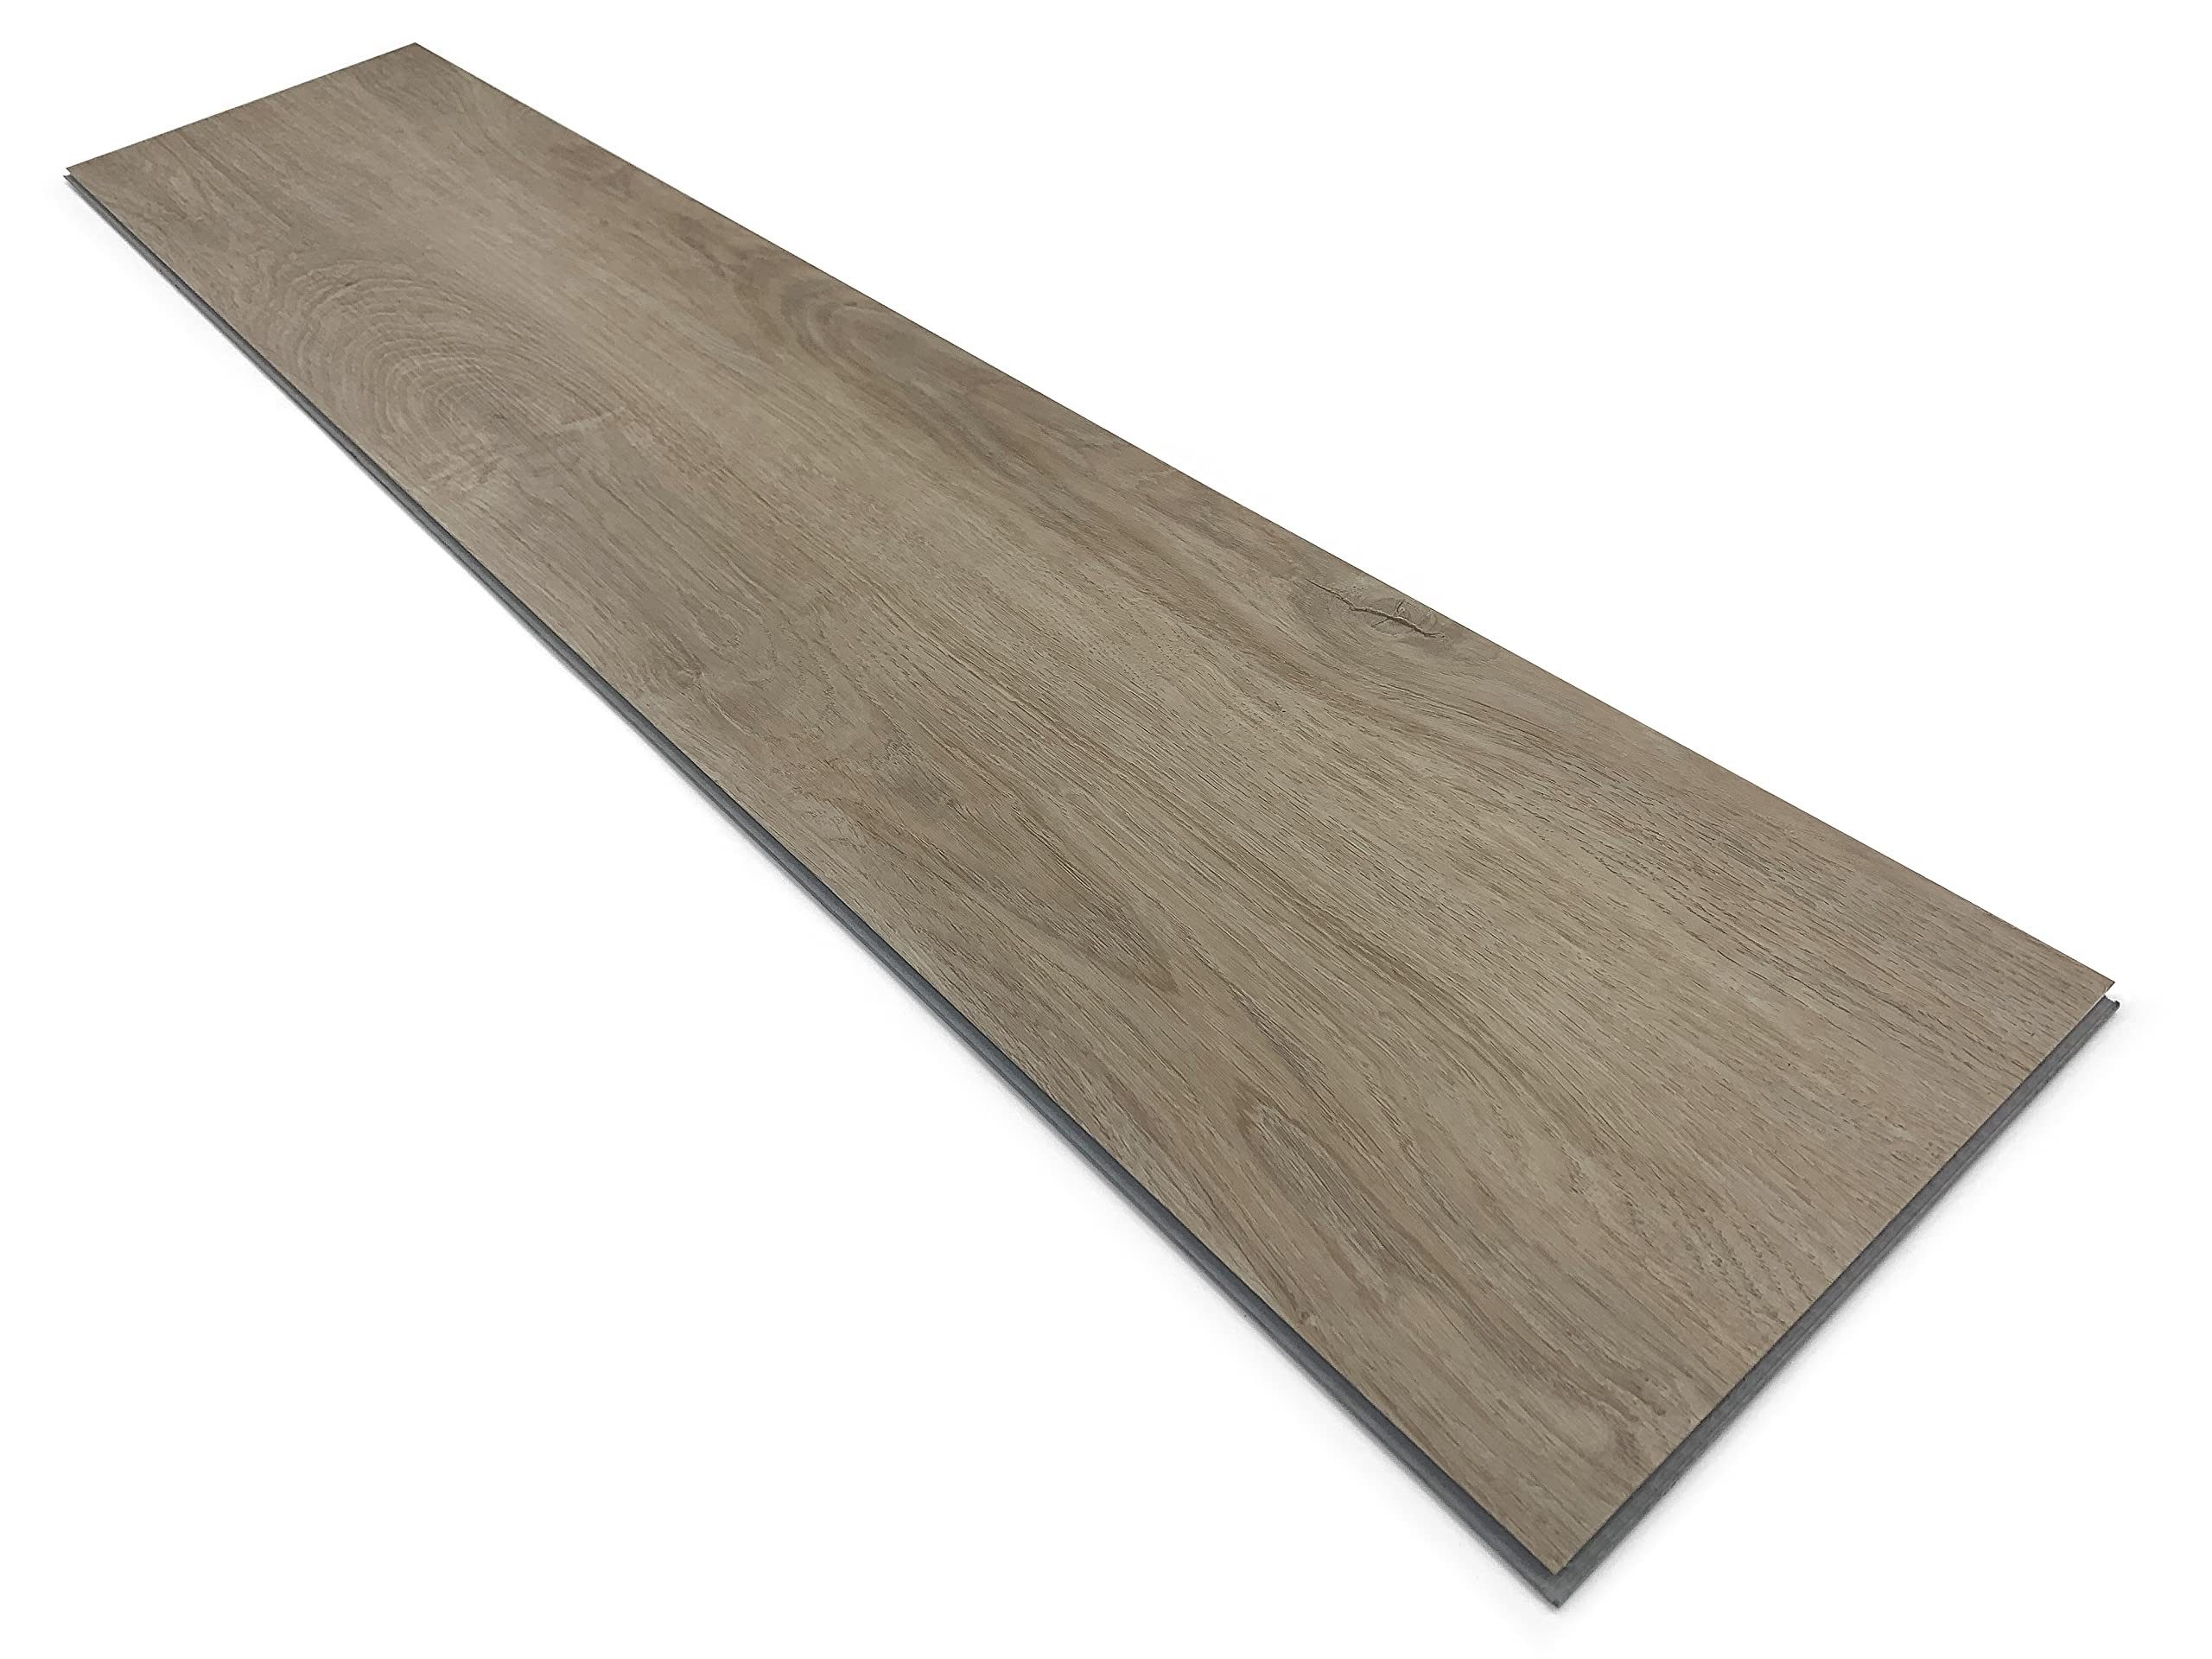 Fine Life Pro Laminat SPC Vinylboden mit vier verschiebbaren Holzplatten-Seiten für nahtlose, SPC Vinylboden mit vier verschiebbaren Holzplatten-Seiten für nahtlose, Anwendung auf jeder Oberfläche - Perfekt für Ihre Wohndekoration!